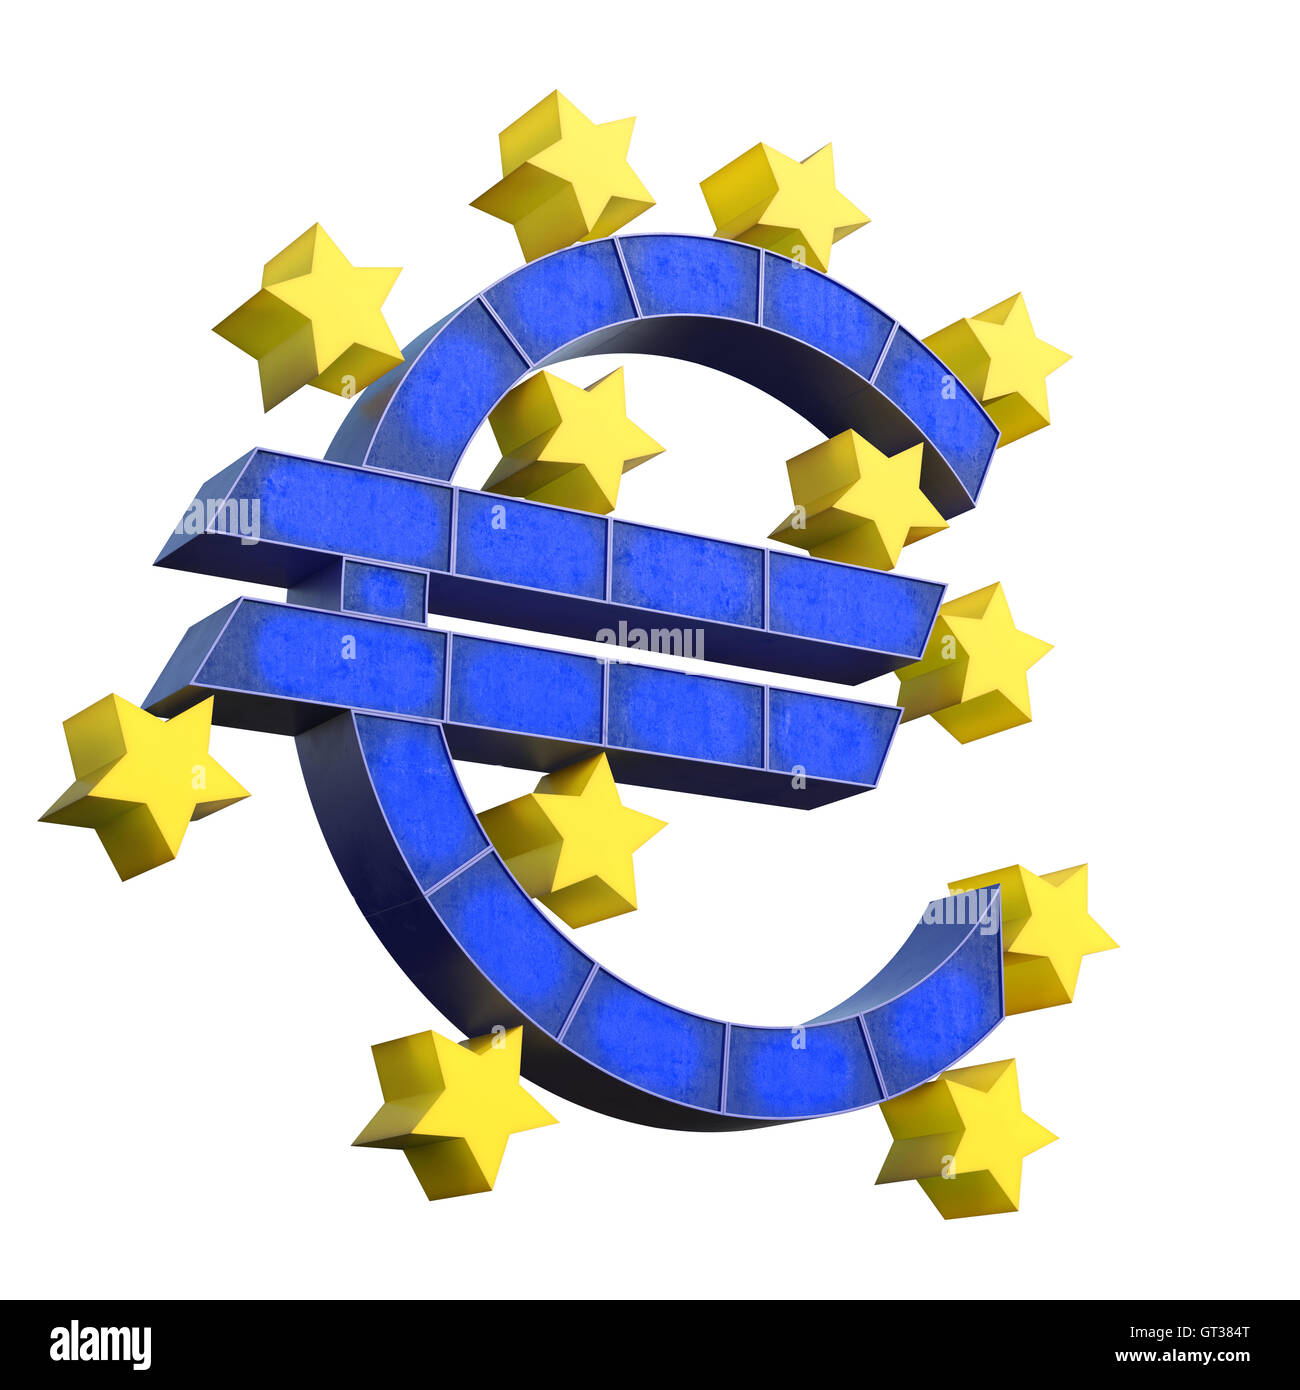 Banque centrale européenne symbole isolé sur fond blanc. Rednering 3d Banque D'Images